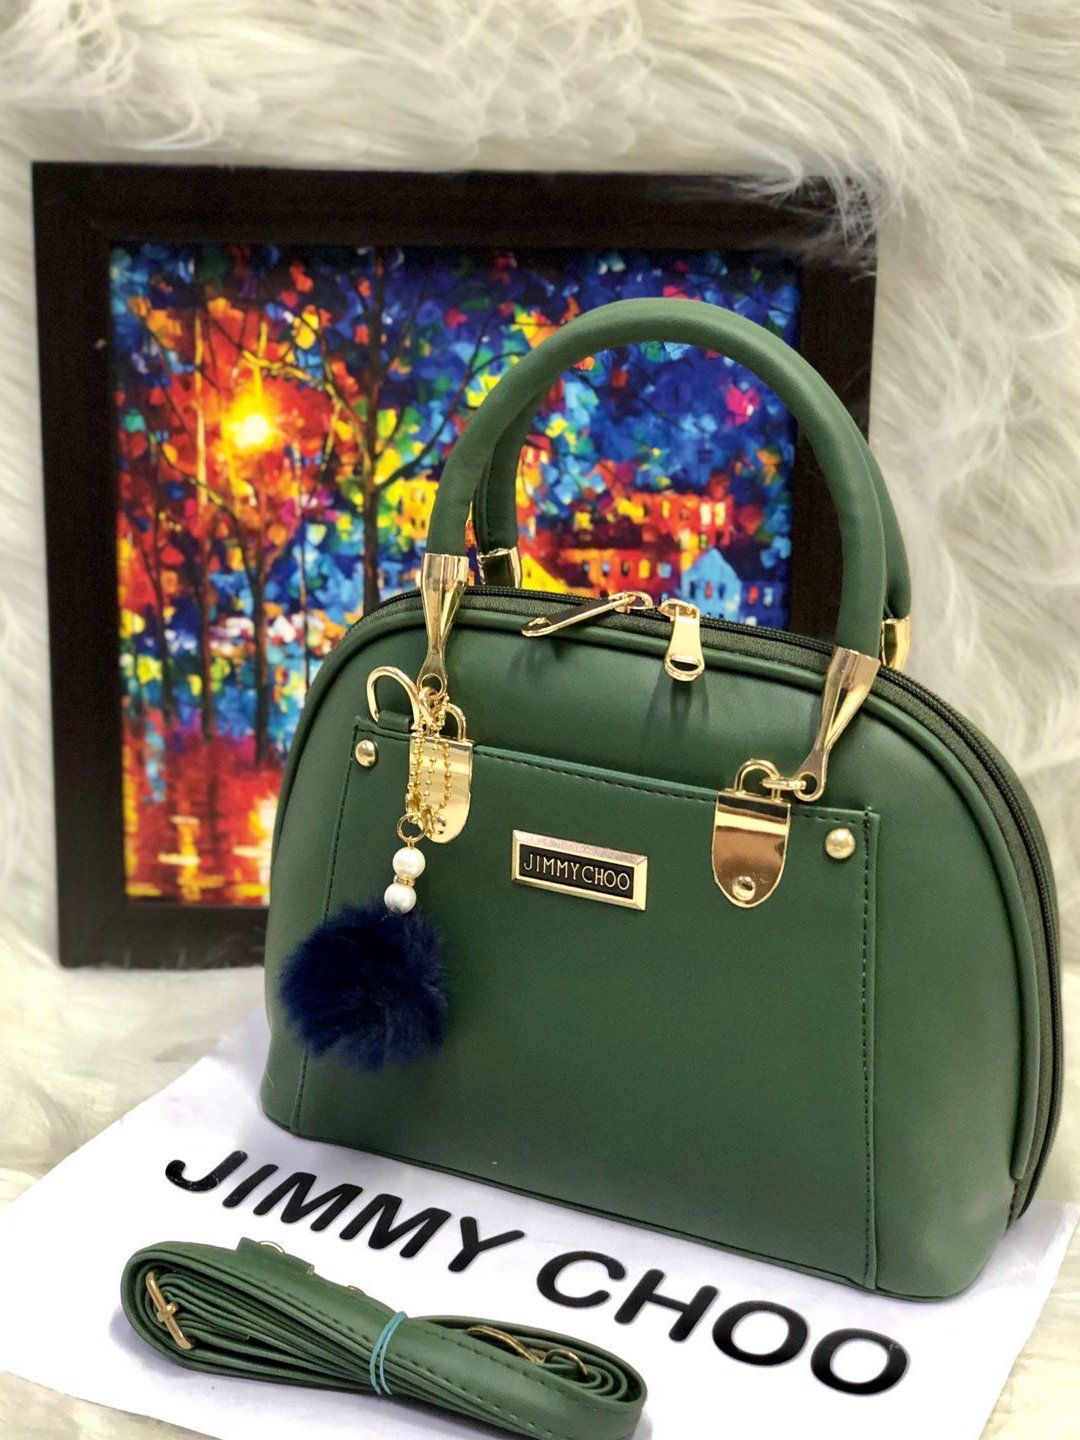 Buy First Copy Jimmy Choo Ladies Bags Online in India : TheLuxuryTag